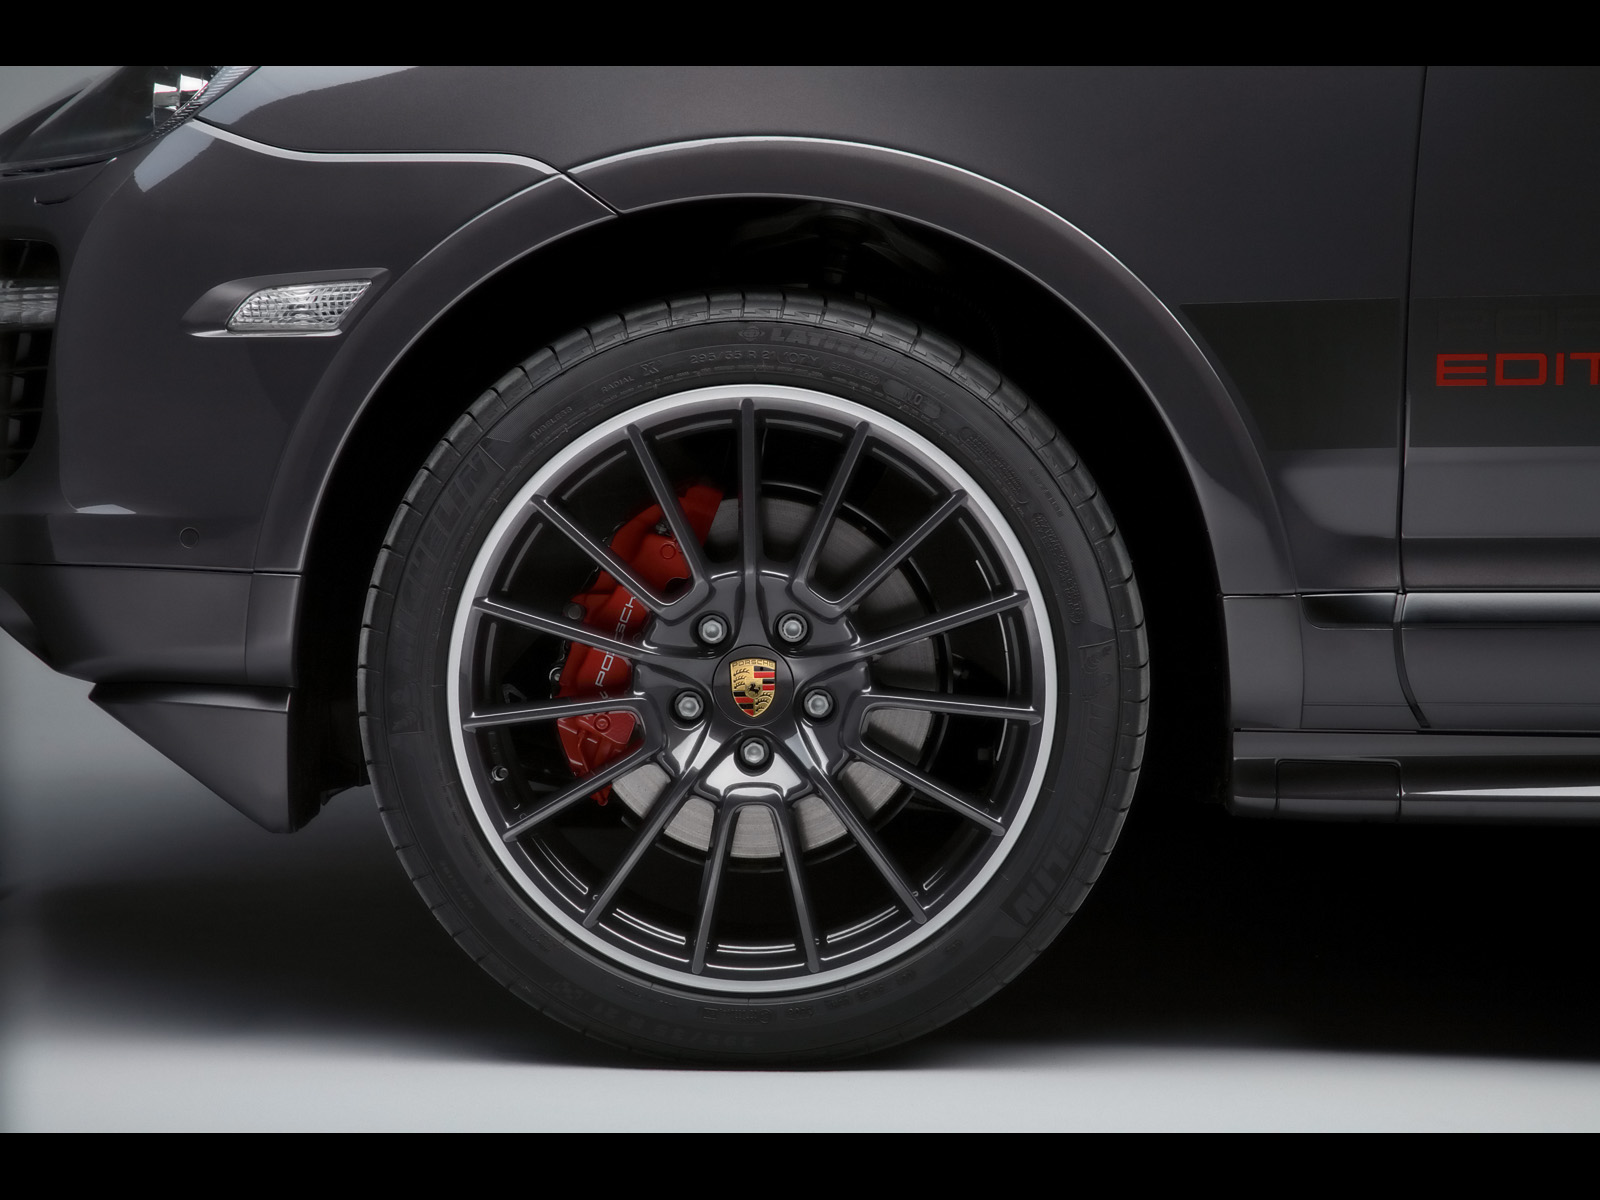 Gts Porsche Design Edition 3 - HD Wallpaper 